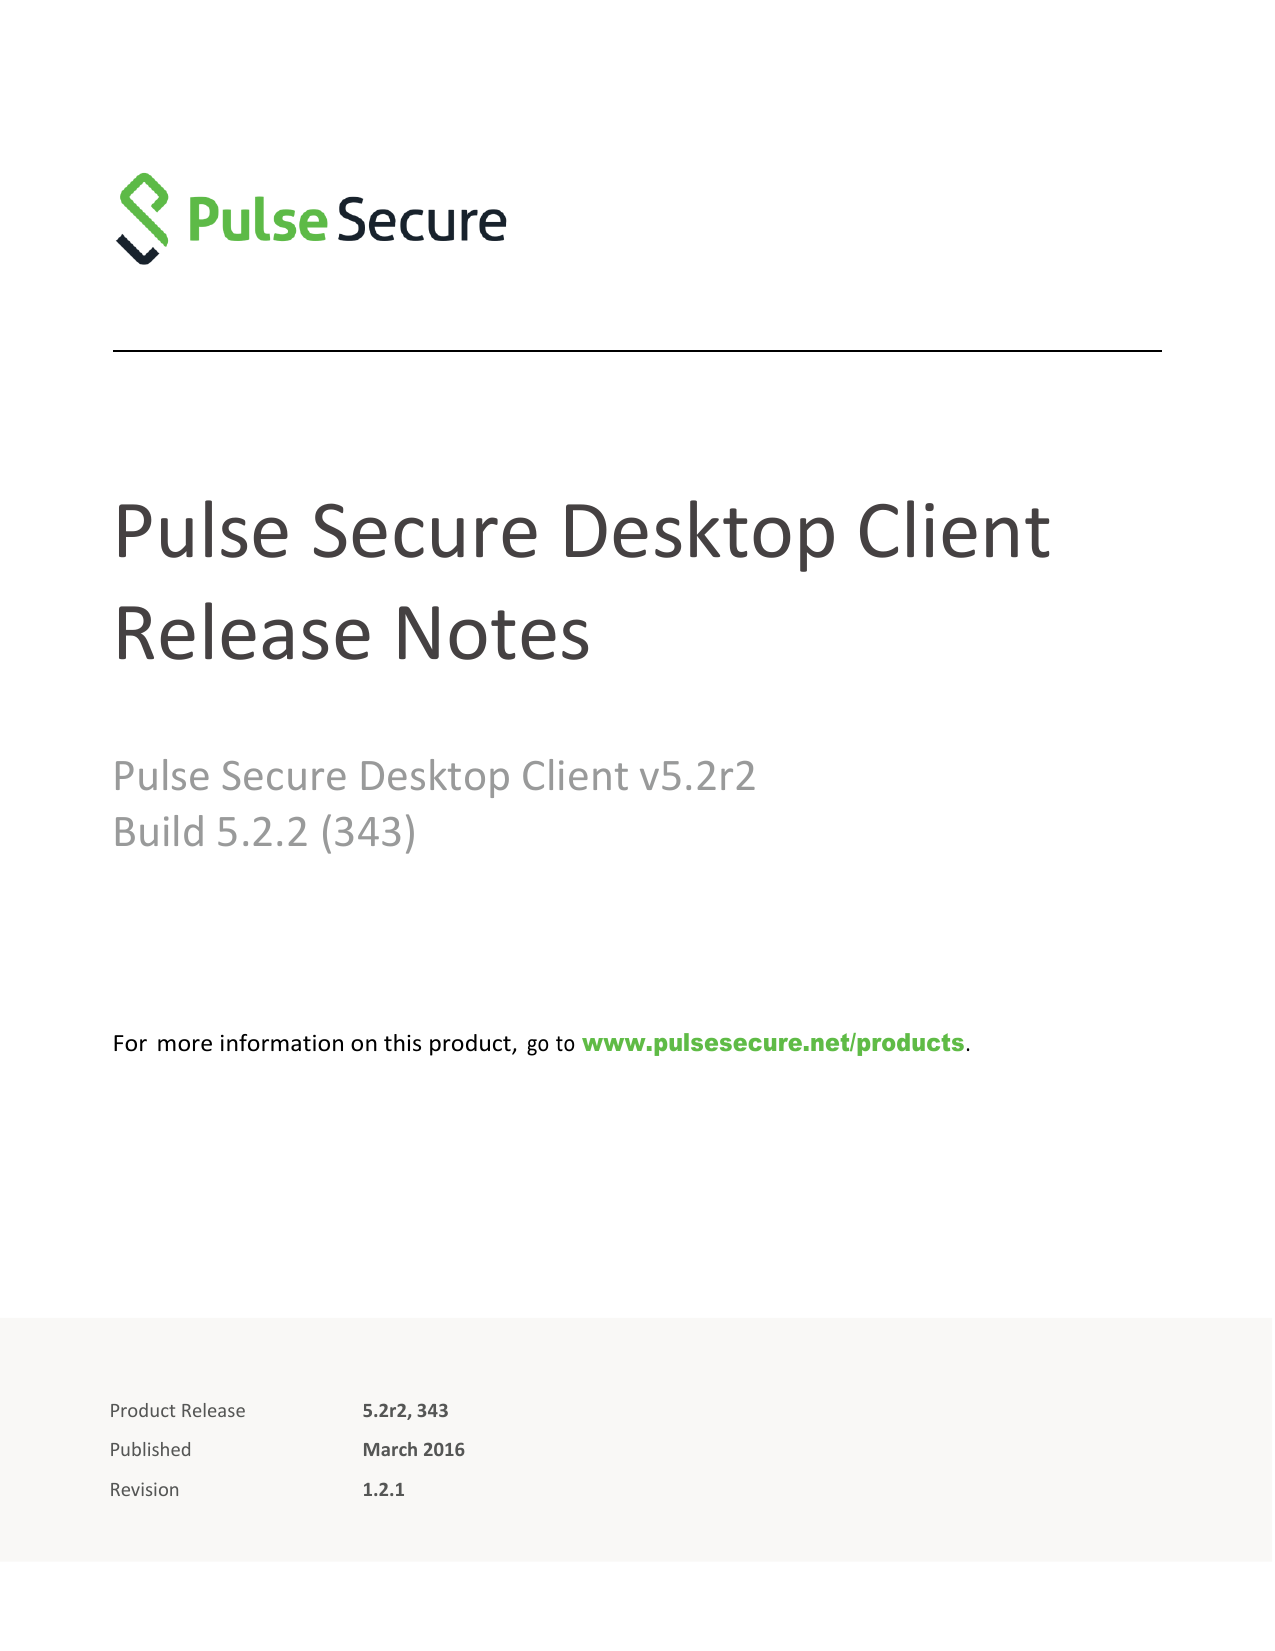 change password pulse secure client